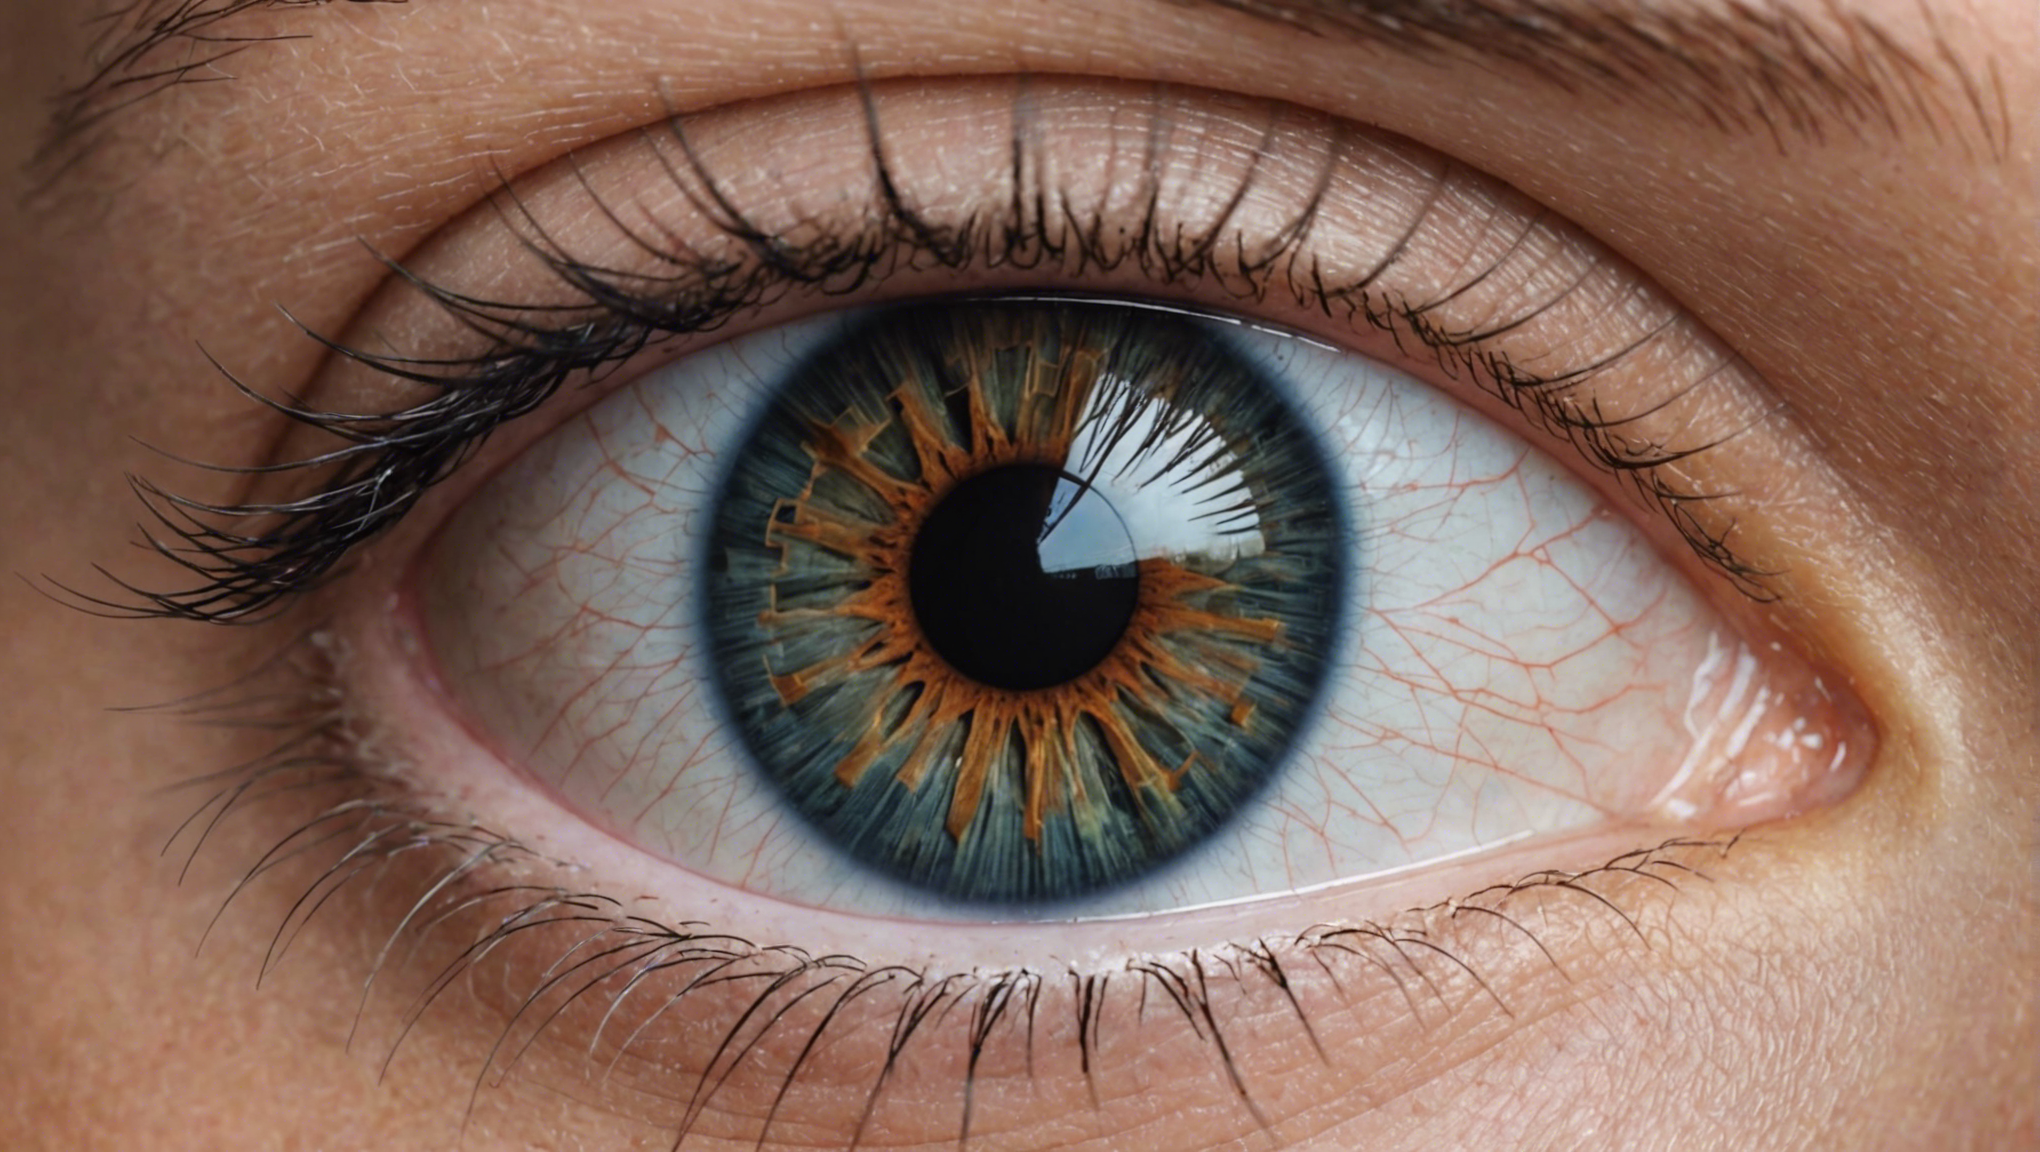 opération des yeux à toulouse : découvrez comment retrouver une vision parfaite grâce à cette intervention chirurgicale innovante.